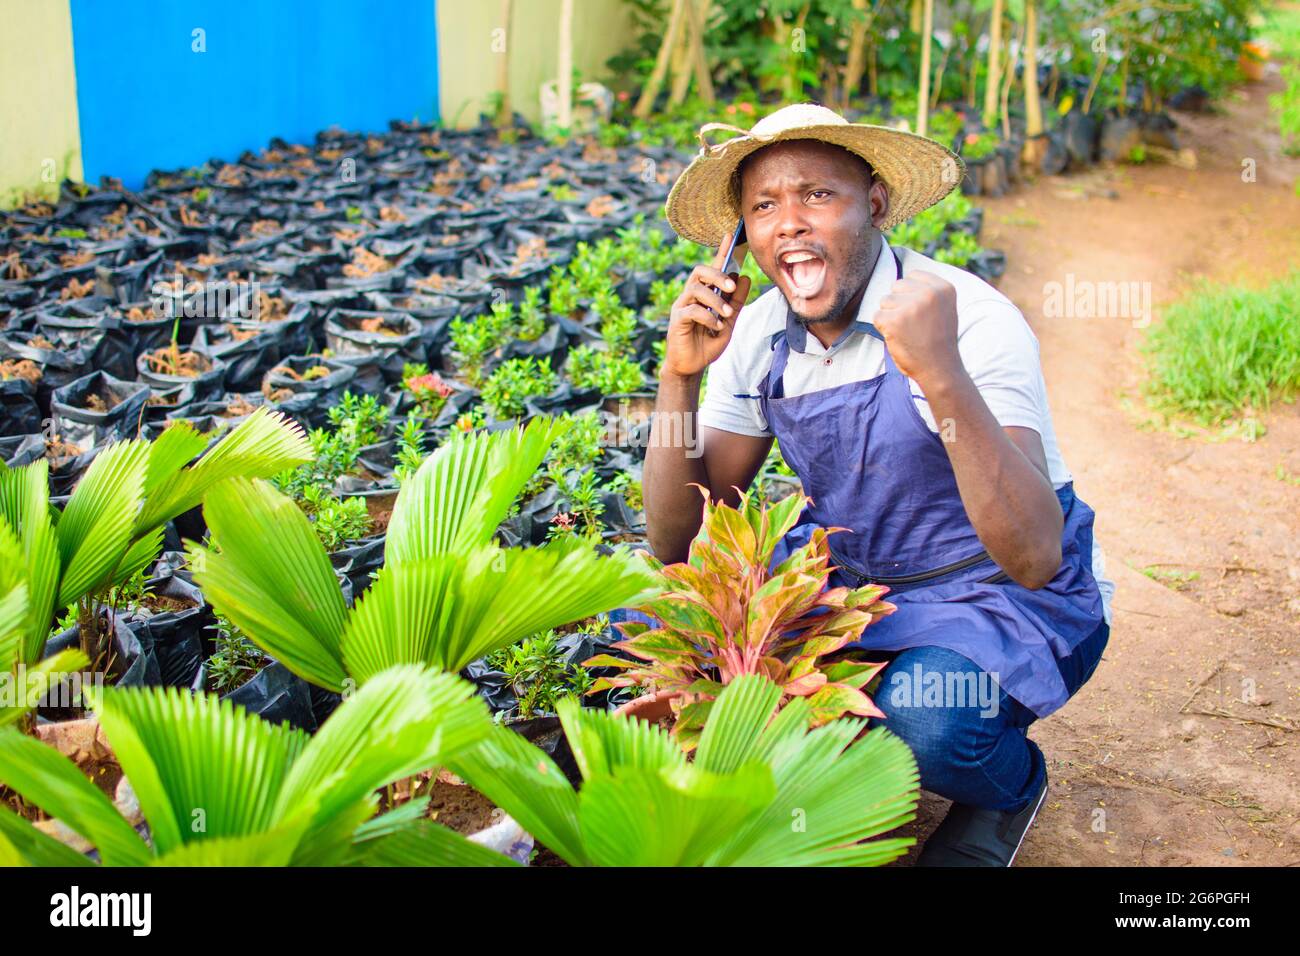 Afrikanischer Gärtner, Blumenhändler oder Gärtner mit Schürze und Hut, der telefoniert und in der Hocke arbeitet, während er in einer grünen und bunten Blüte arbeitet Stockfoto